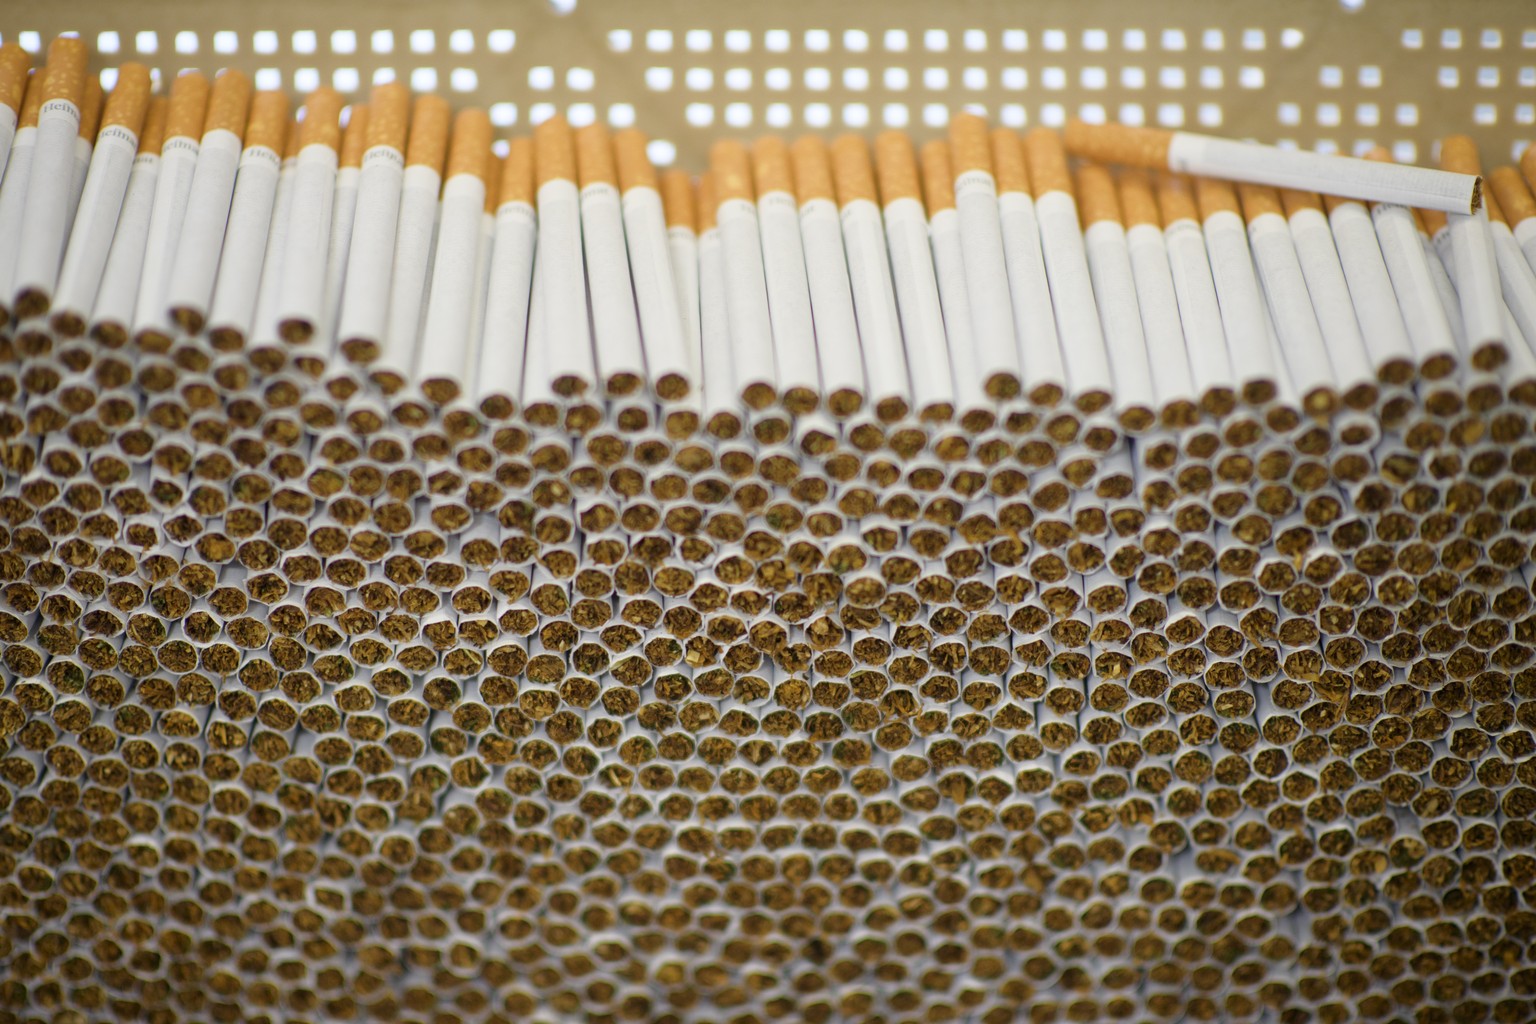 Die Raucherindustrie erfindet sich neu – das könnte fatale Folgen haben